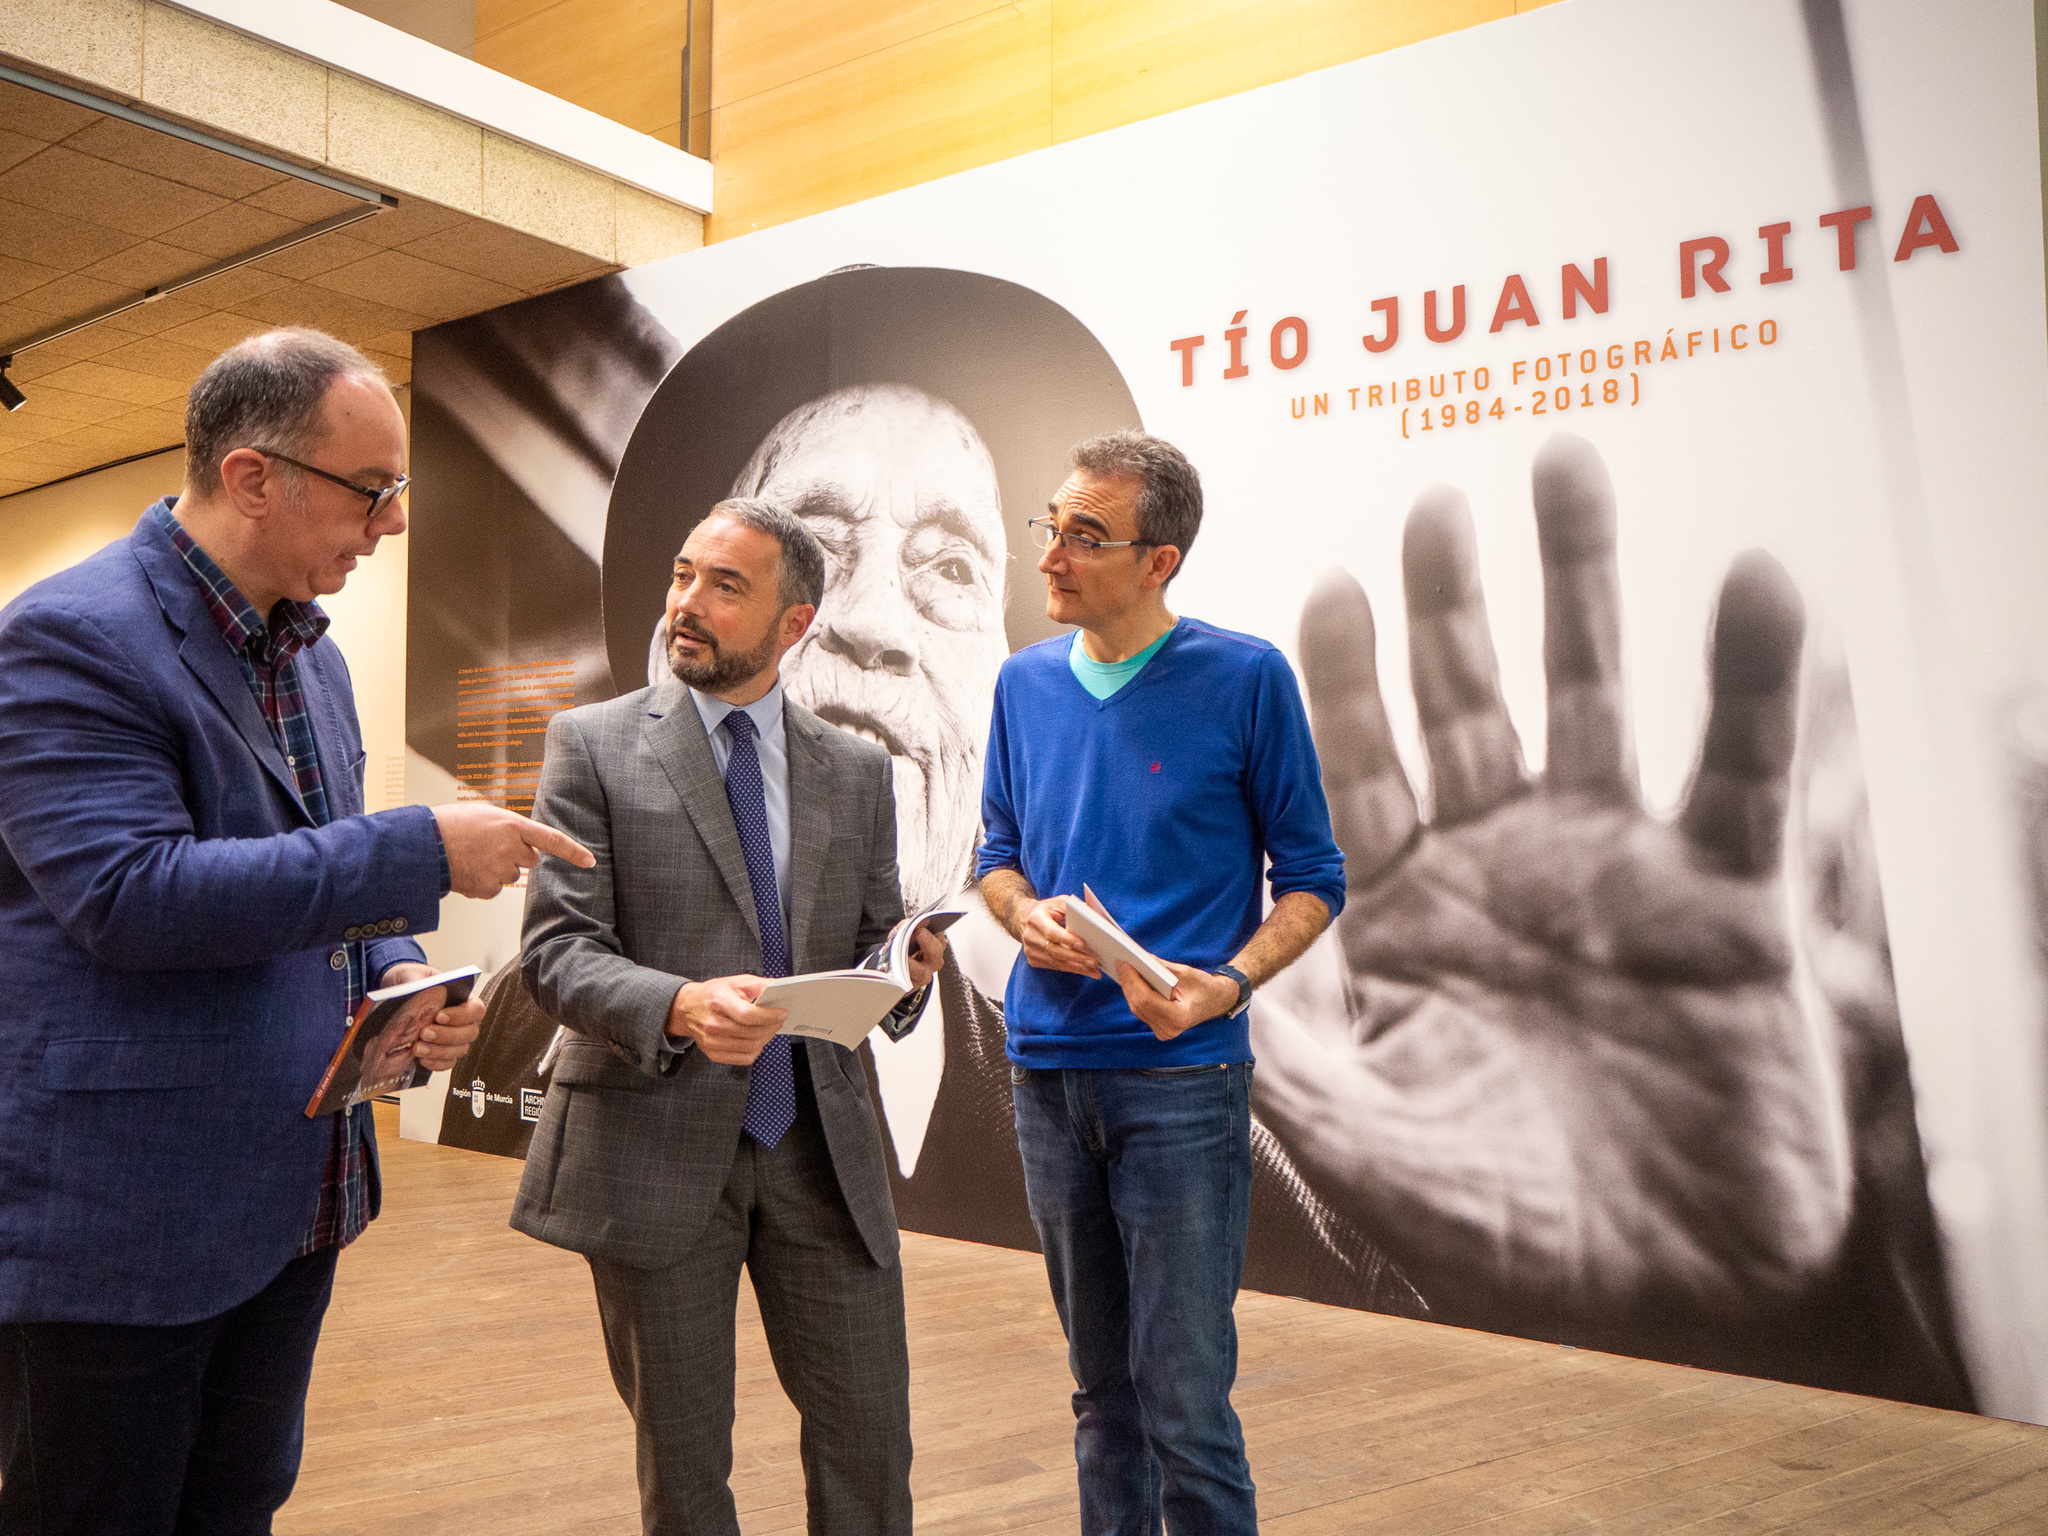 Presentación de la exposición sobre el Tío Juan Rita